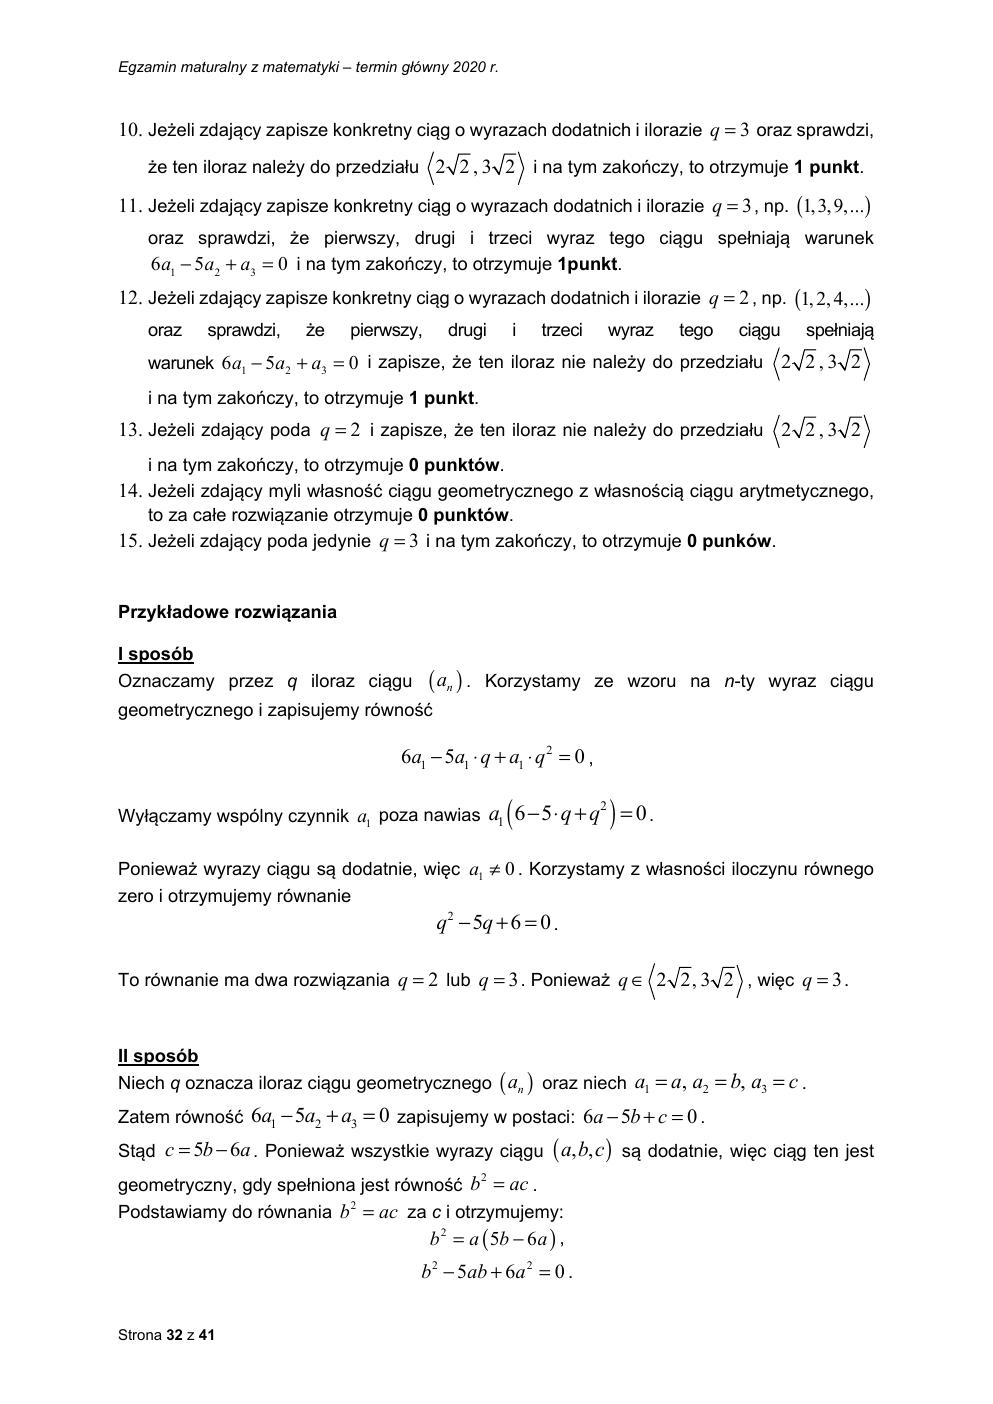 matematyka podstawowy - matura 2020 - odpowiedzi-32